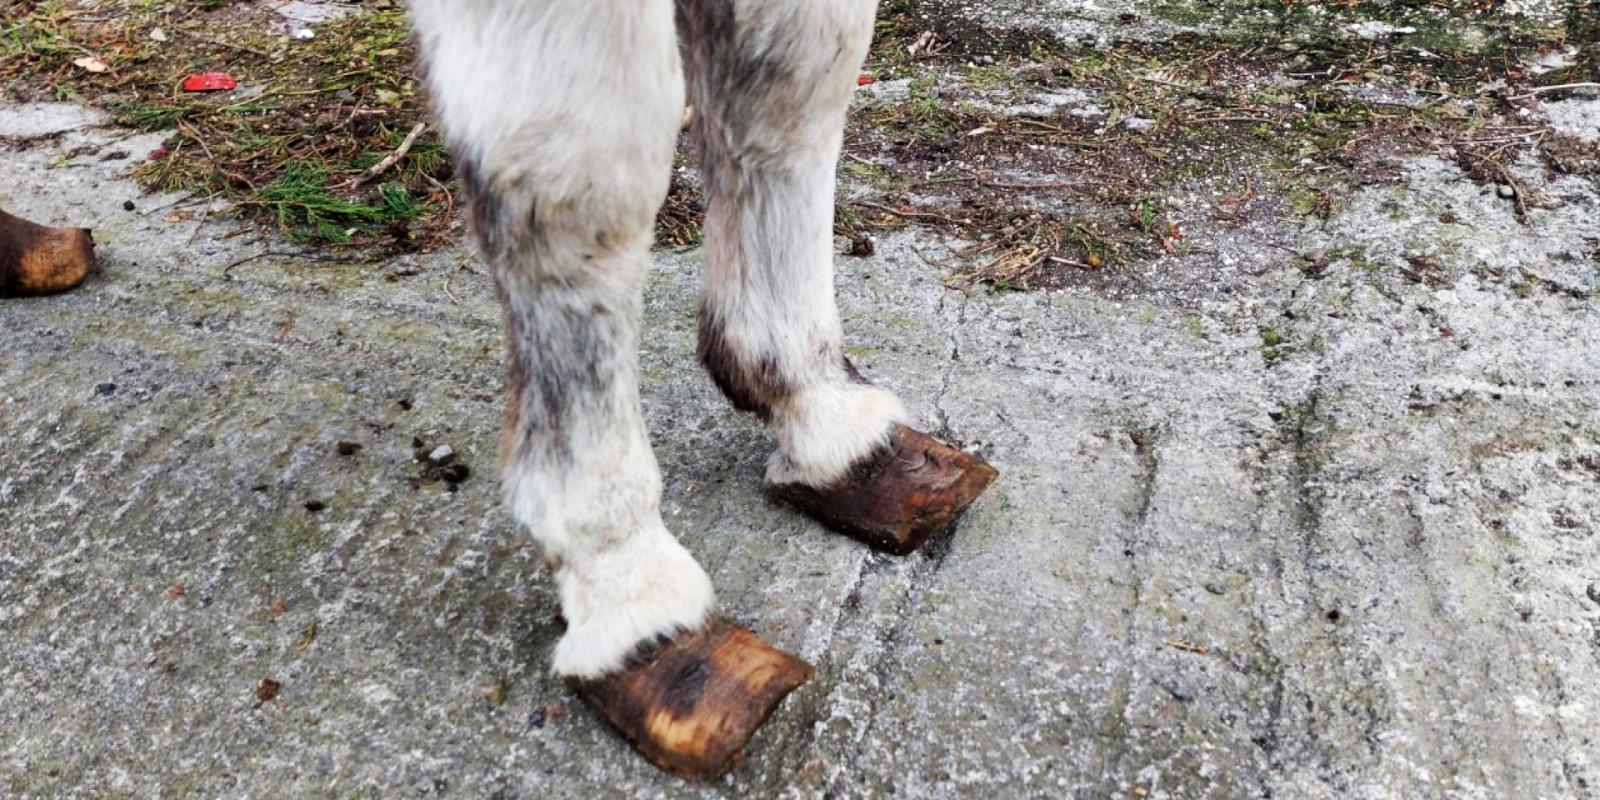 Donkey's overgrown hooves